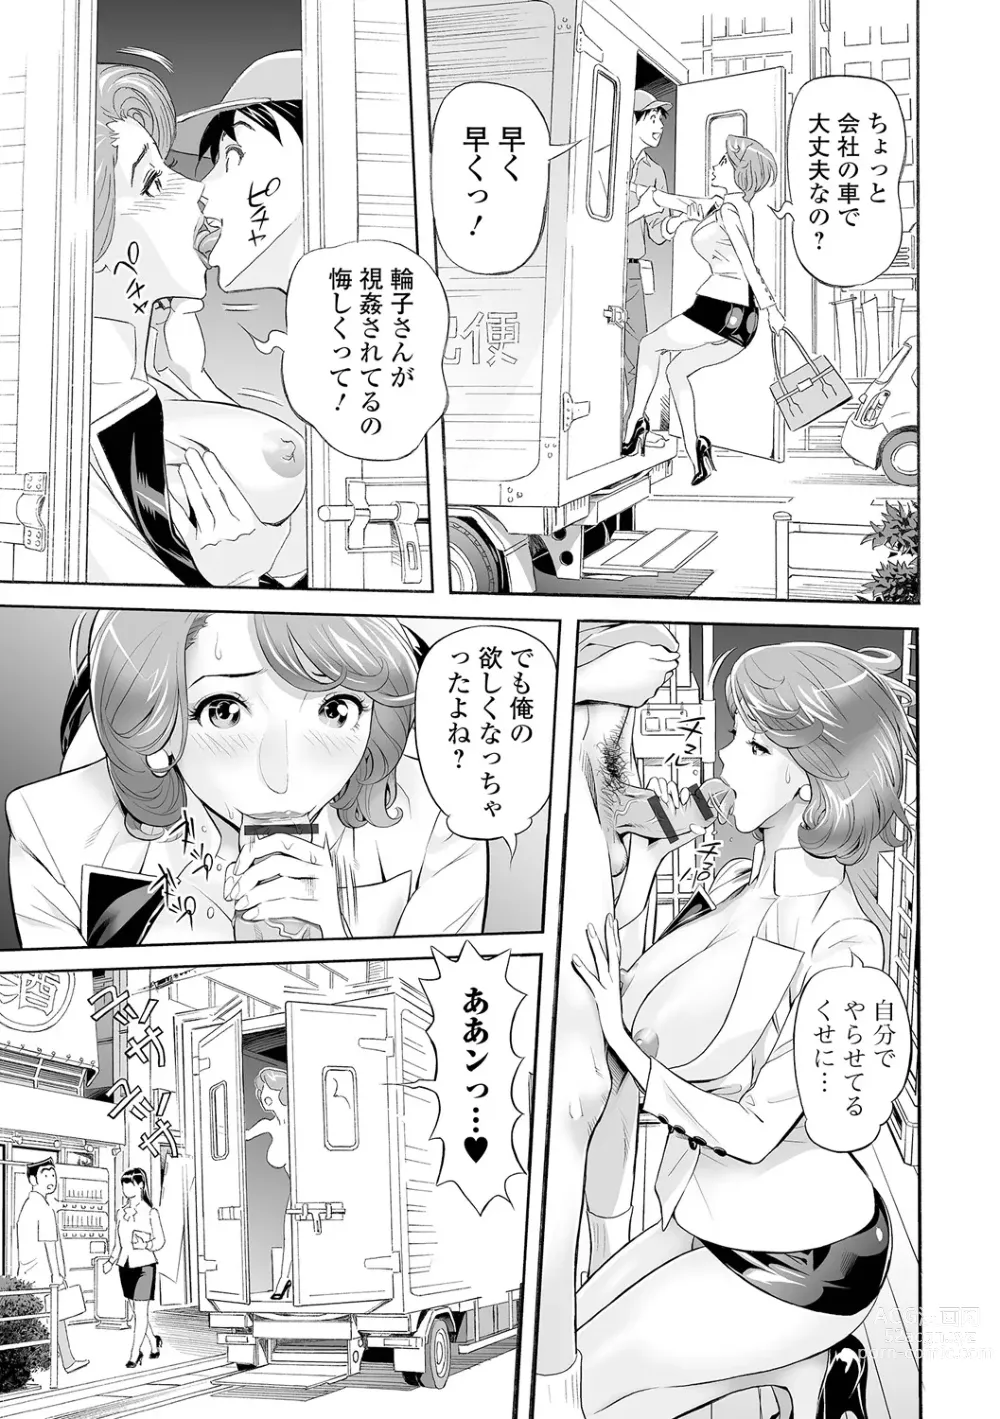 Page 193 of manga Elegant Erogant